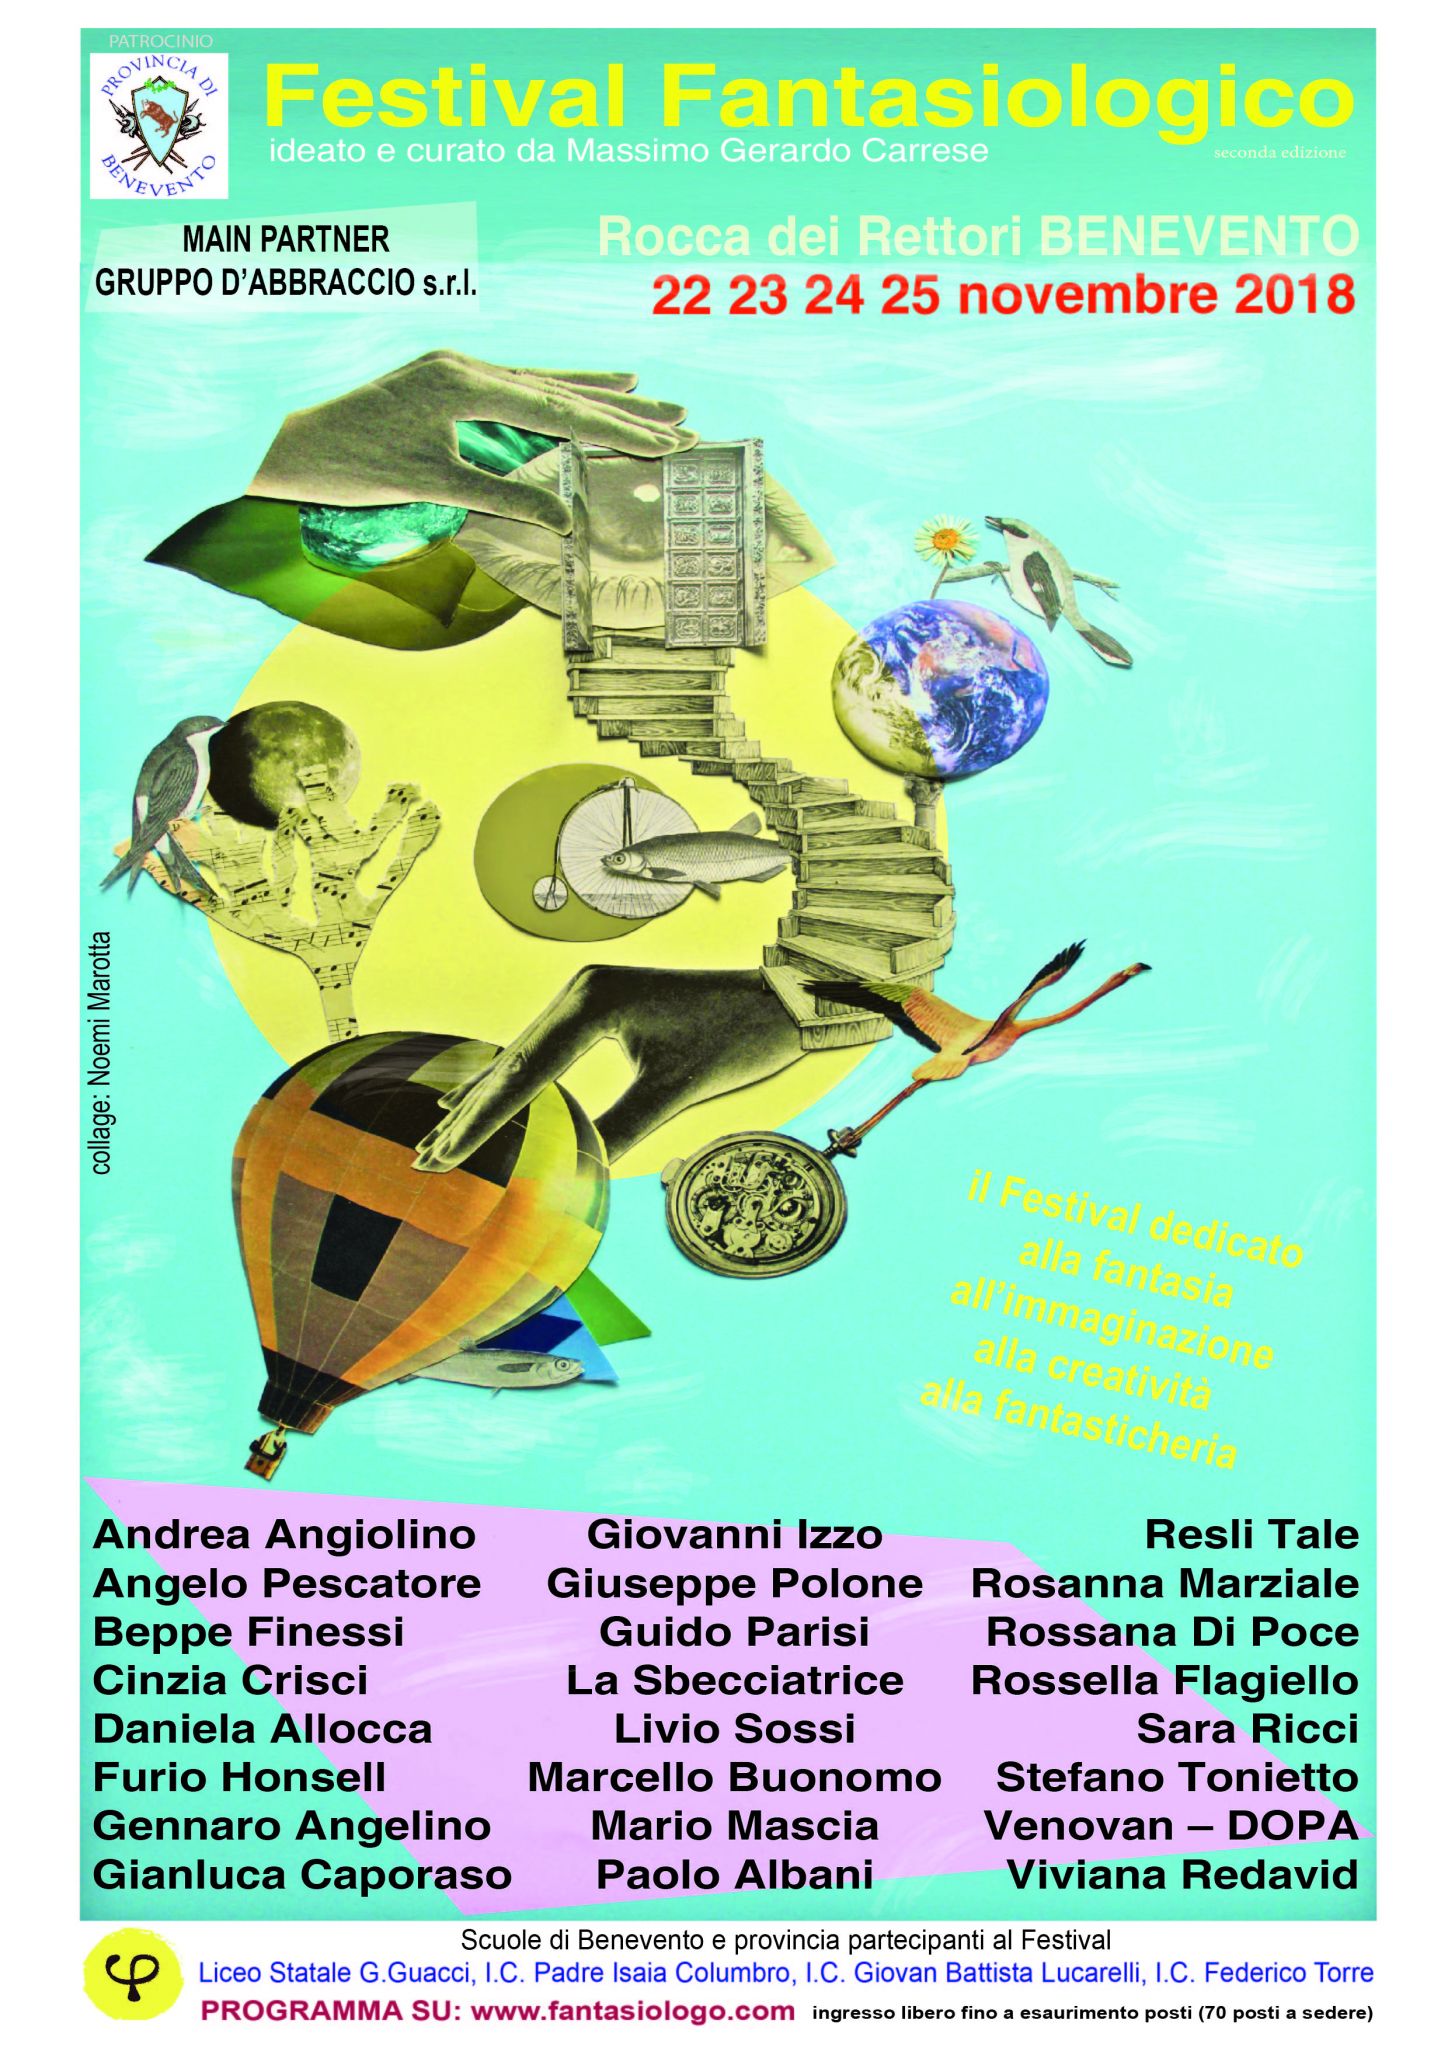 A Benevento arriva il Festival Fantasiologico, ideato e curato dallo studioso Massimo Gerardo Carrese